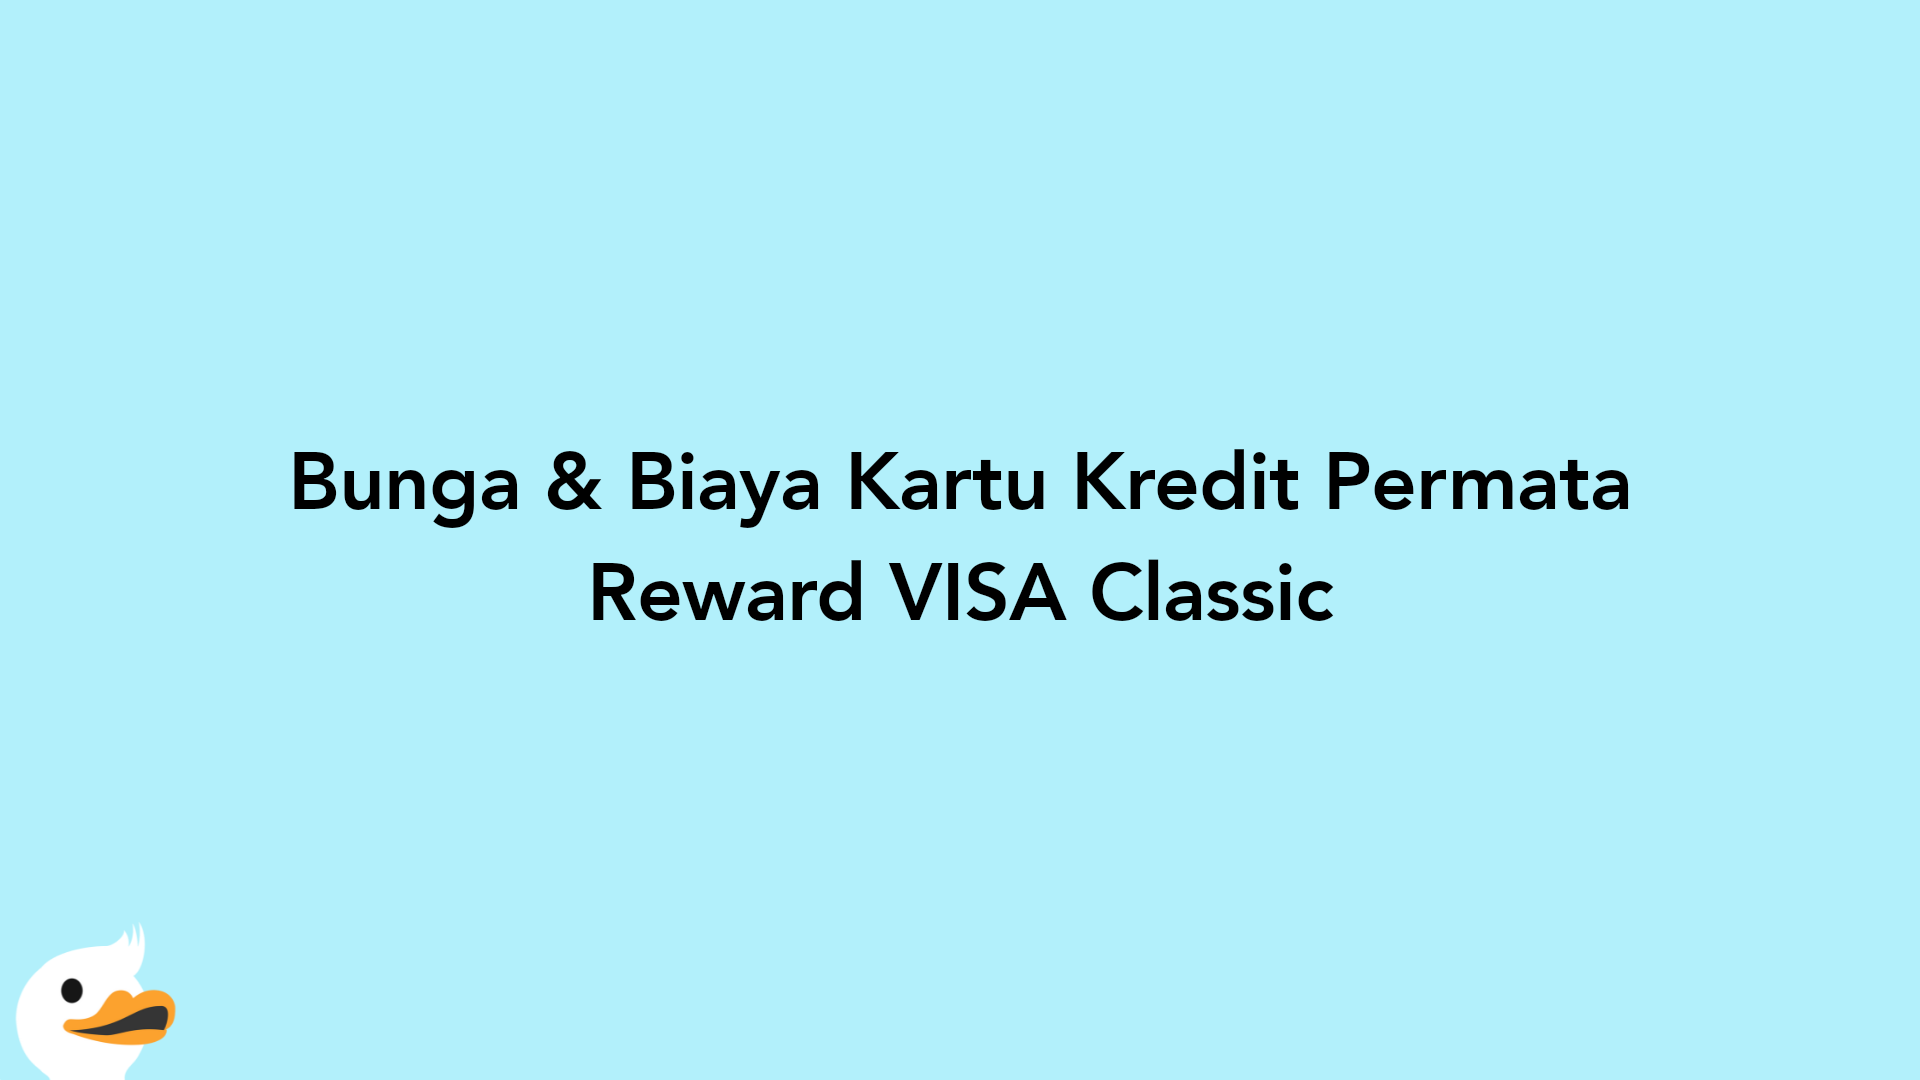 Bunga & Biaya Kartu Kredit Permata Reward VISA Classic